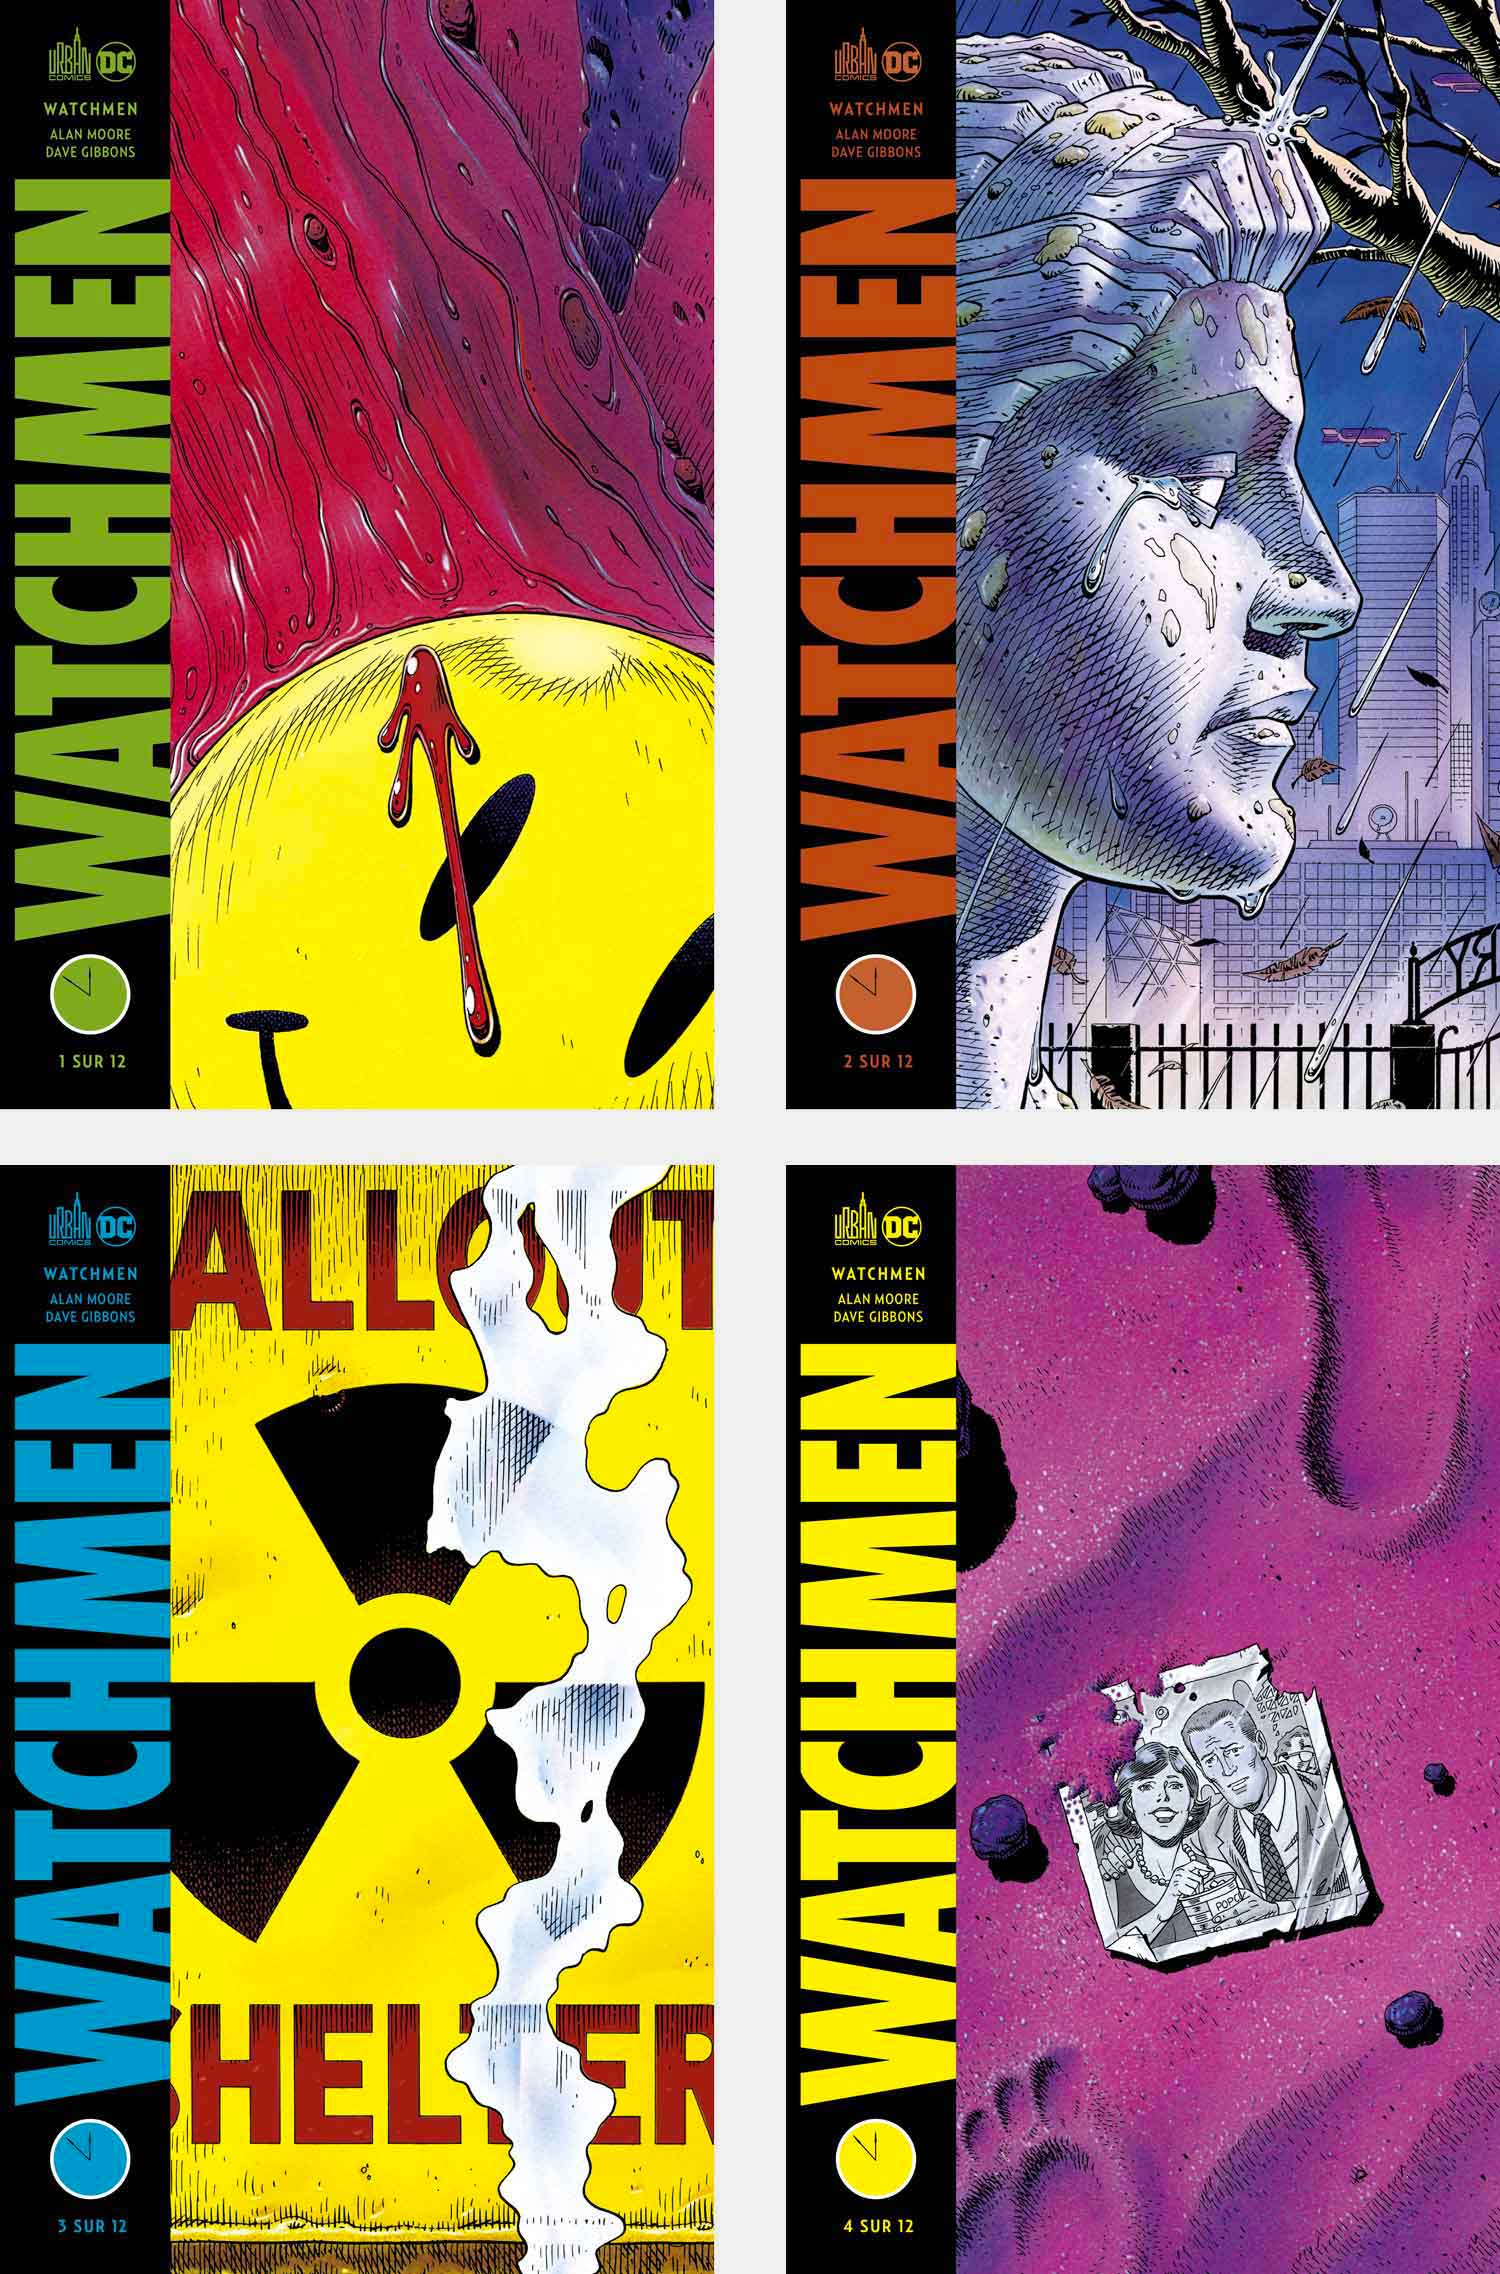 Les quatre premières couvertures de Watchmen en version française. Celles-ci sont strictement identiques aux couvertures des fascicules américains. À noter que le premier volume est vendu sous film avec une jaquette jaune reprenant l'horloge de l'apocalypse que vous pouvez apercevoir en en-tête de cette chronique.